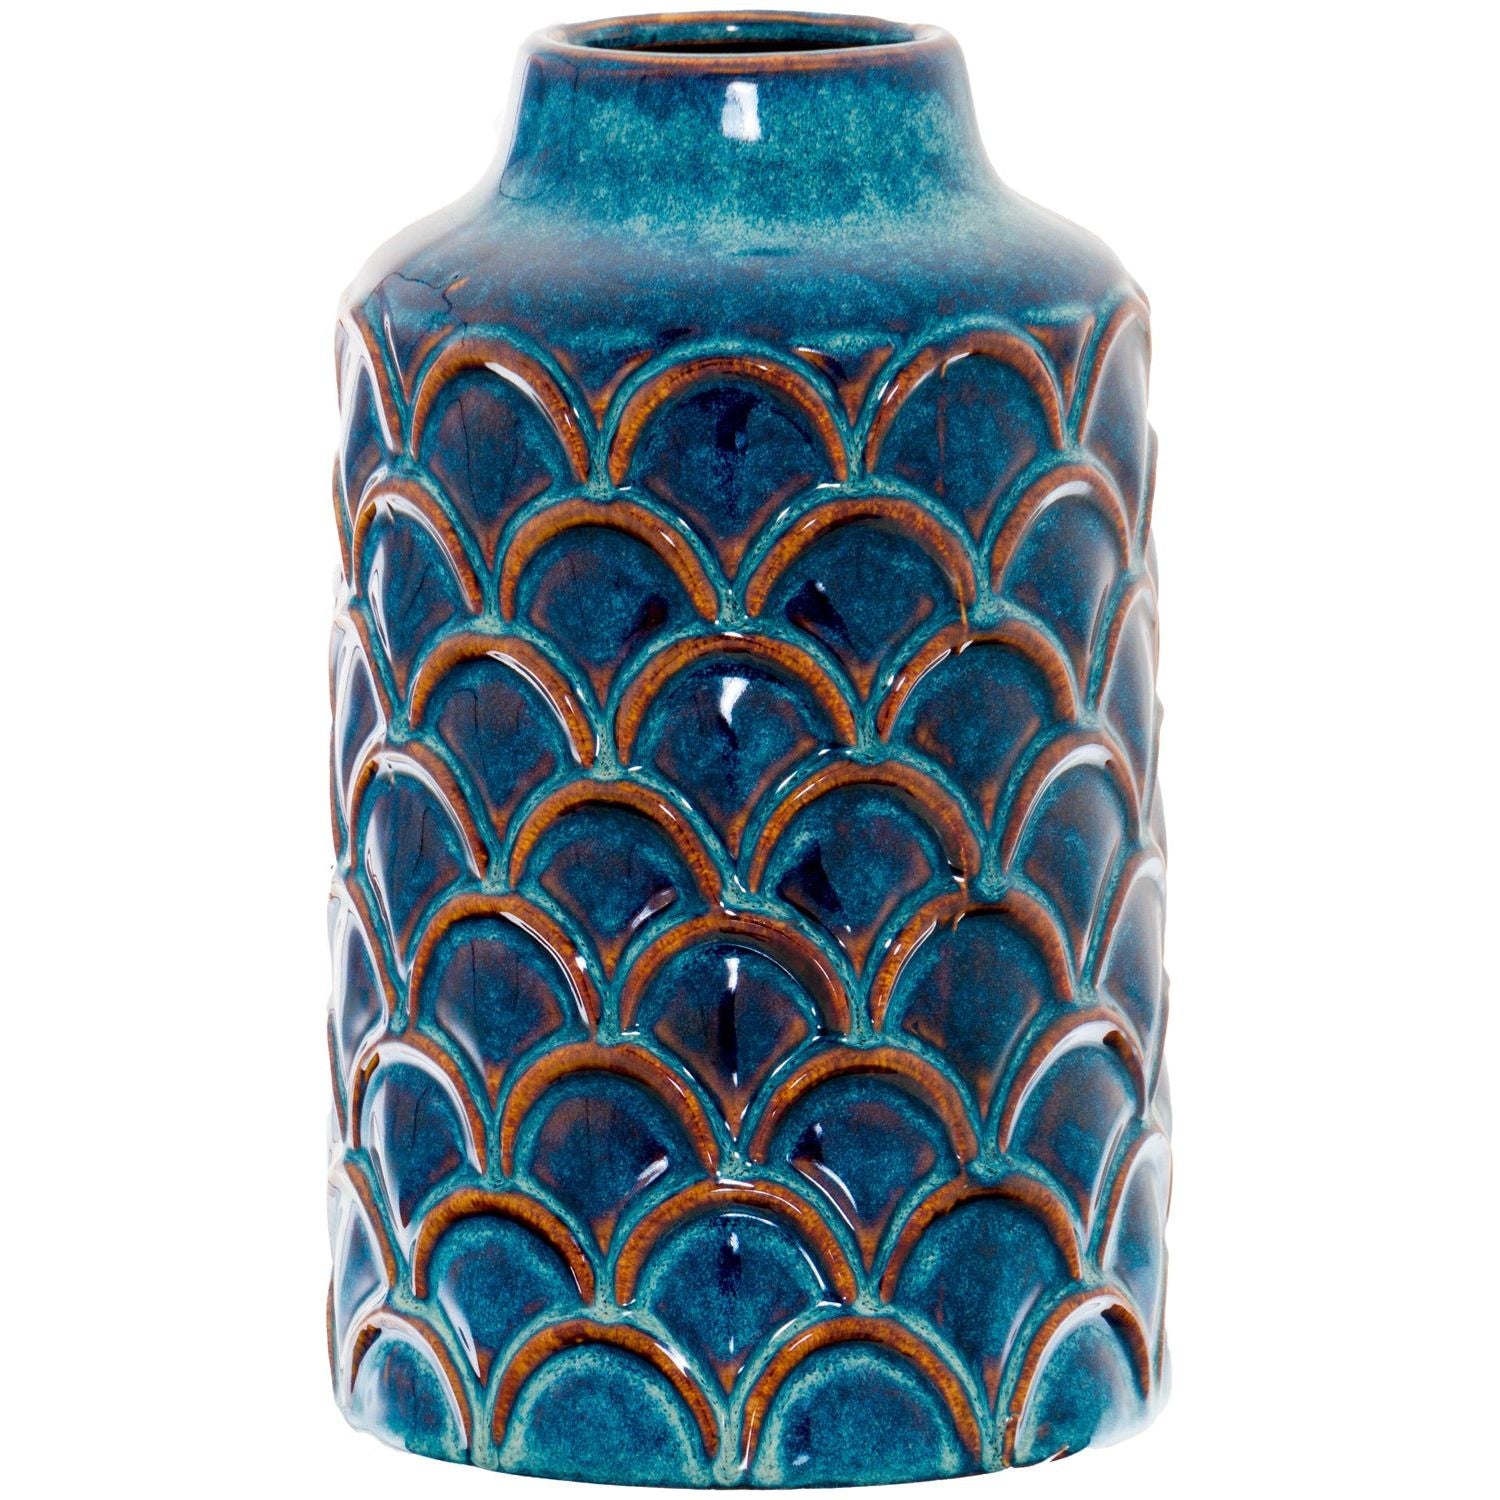 Seville Collection Scalloped Indigo Vase - Ashton and Finch